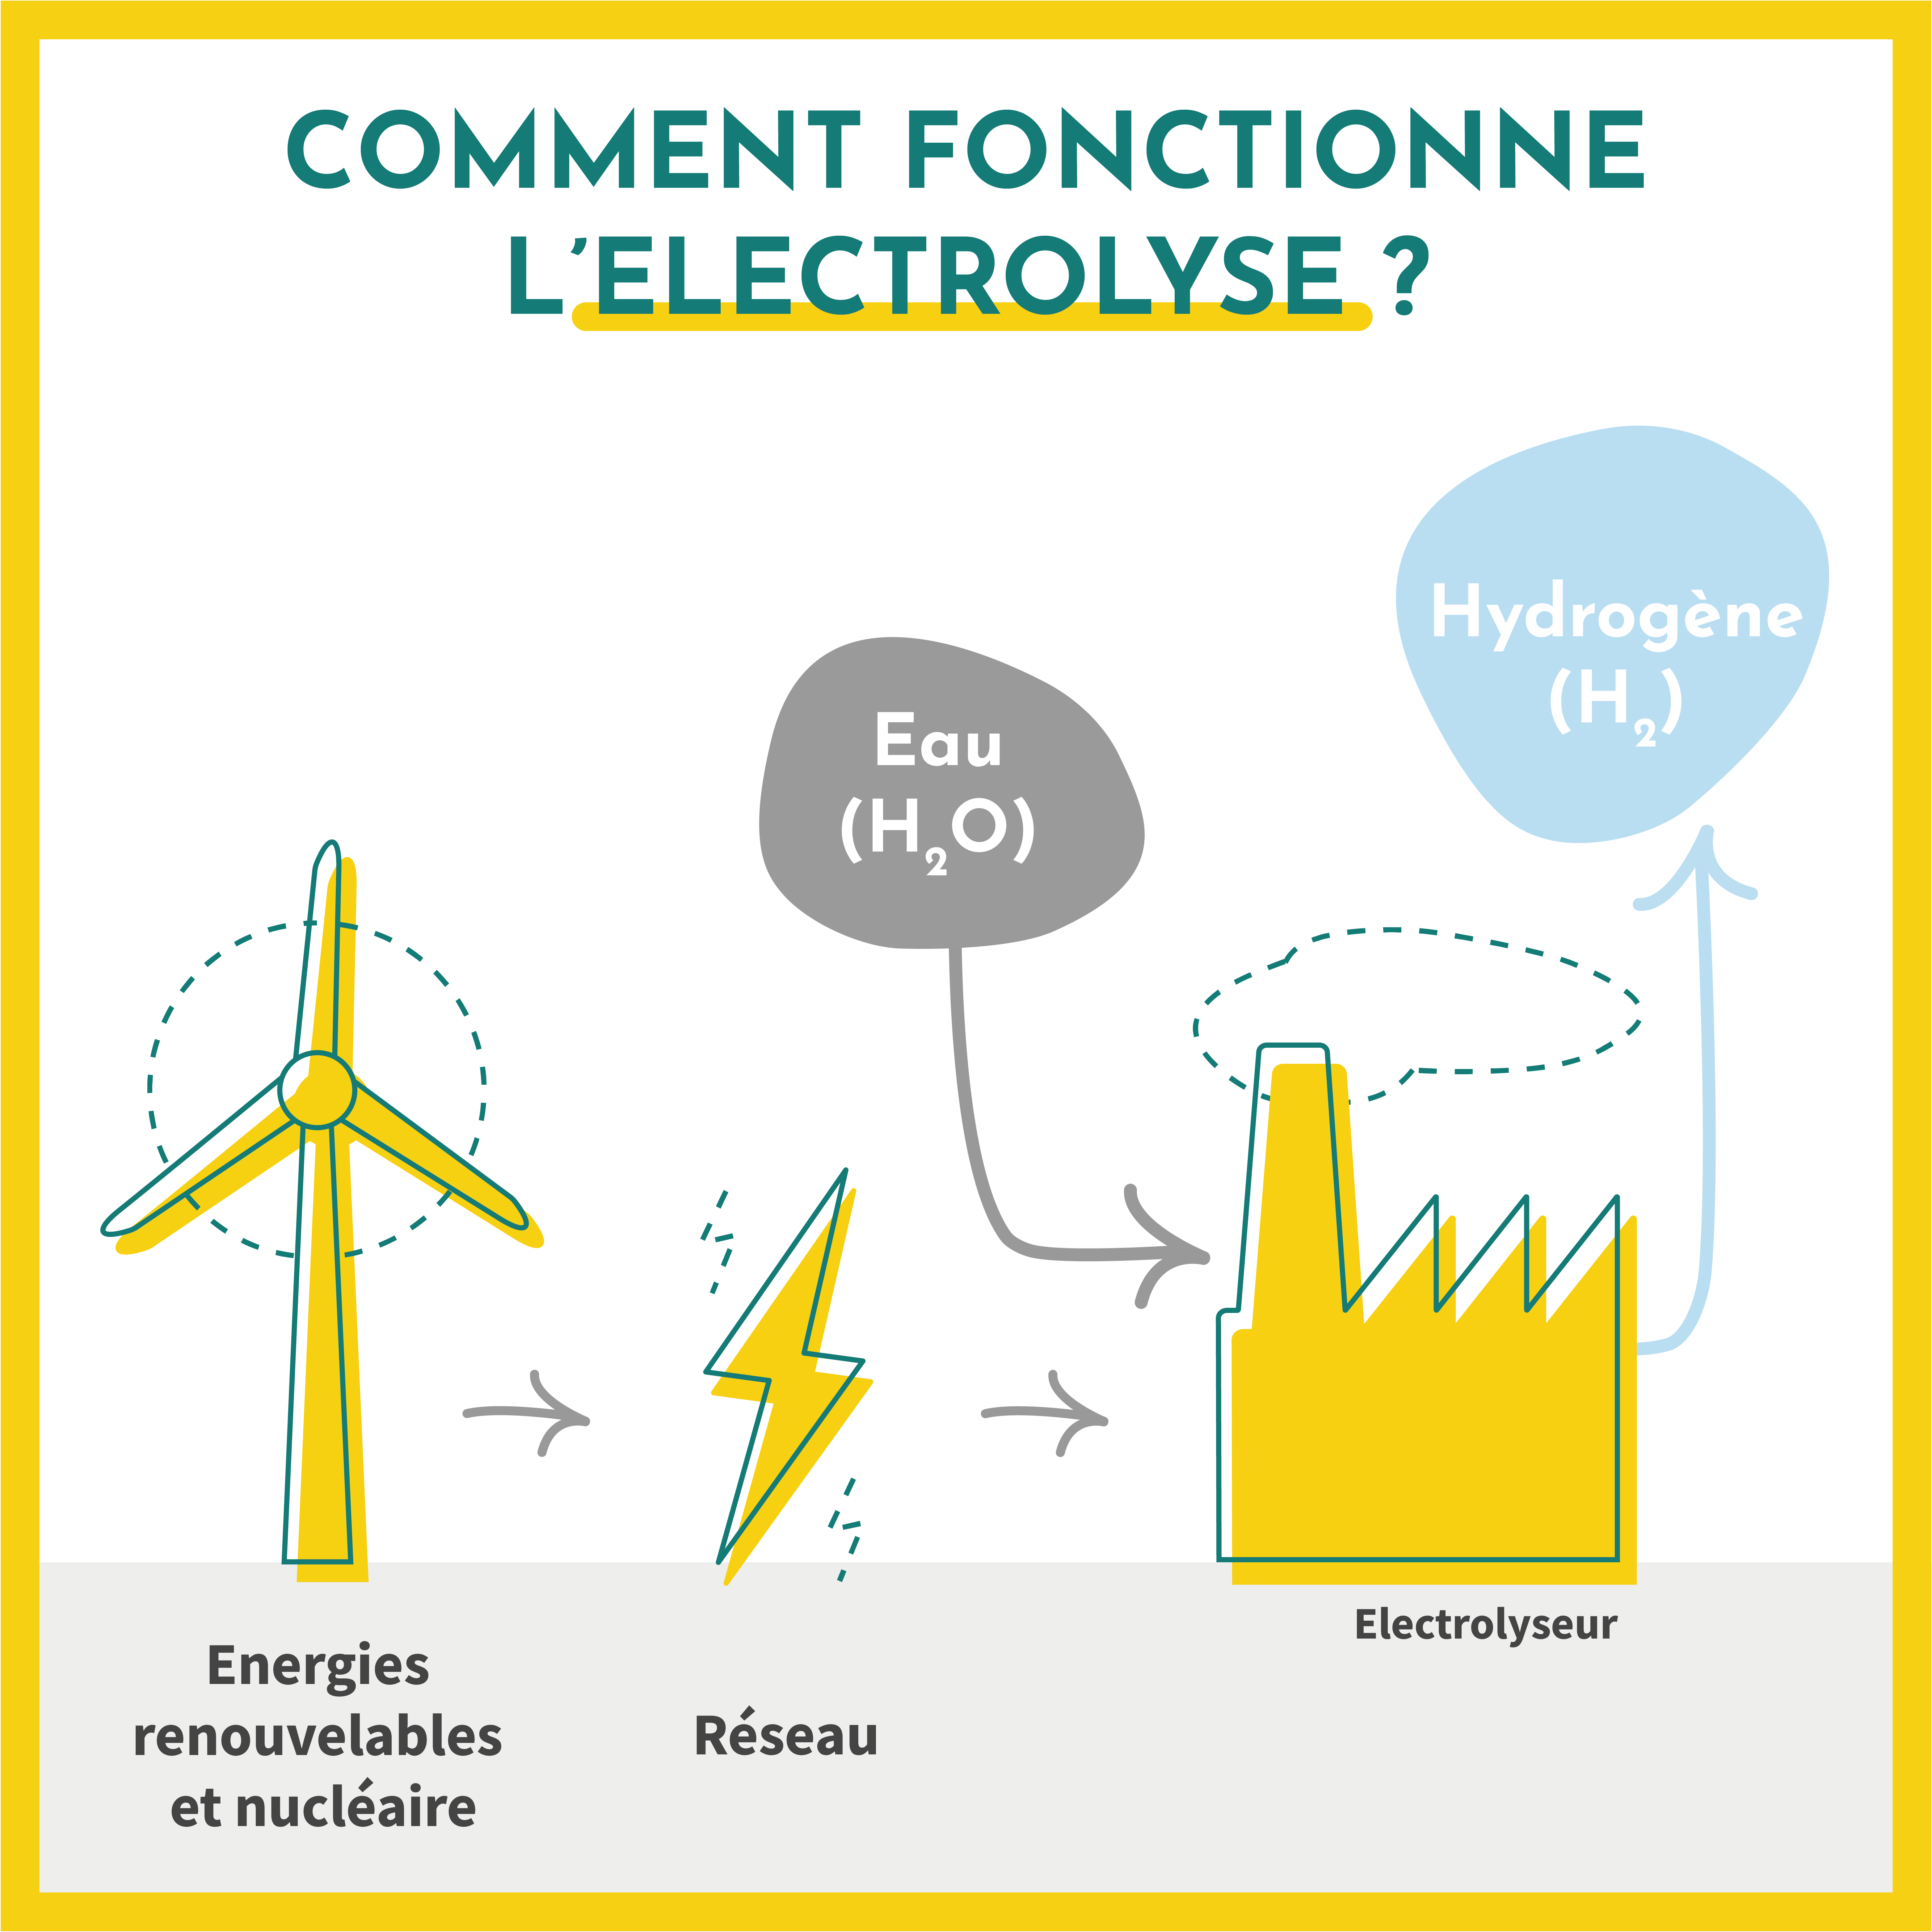 Comment fonctionne l'électrolyse ? L'hydrogène est produit à parti d'électricité issue des énergies renouvelables et nuclaires, et d'eau à travers un electrolyseur.